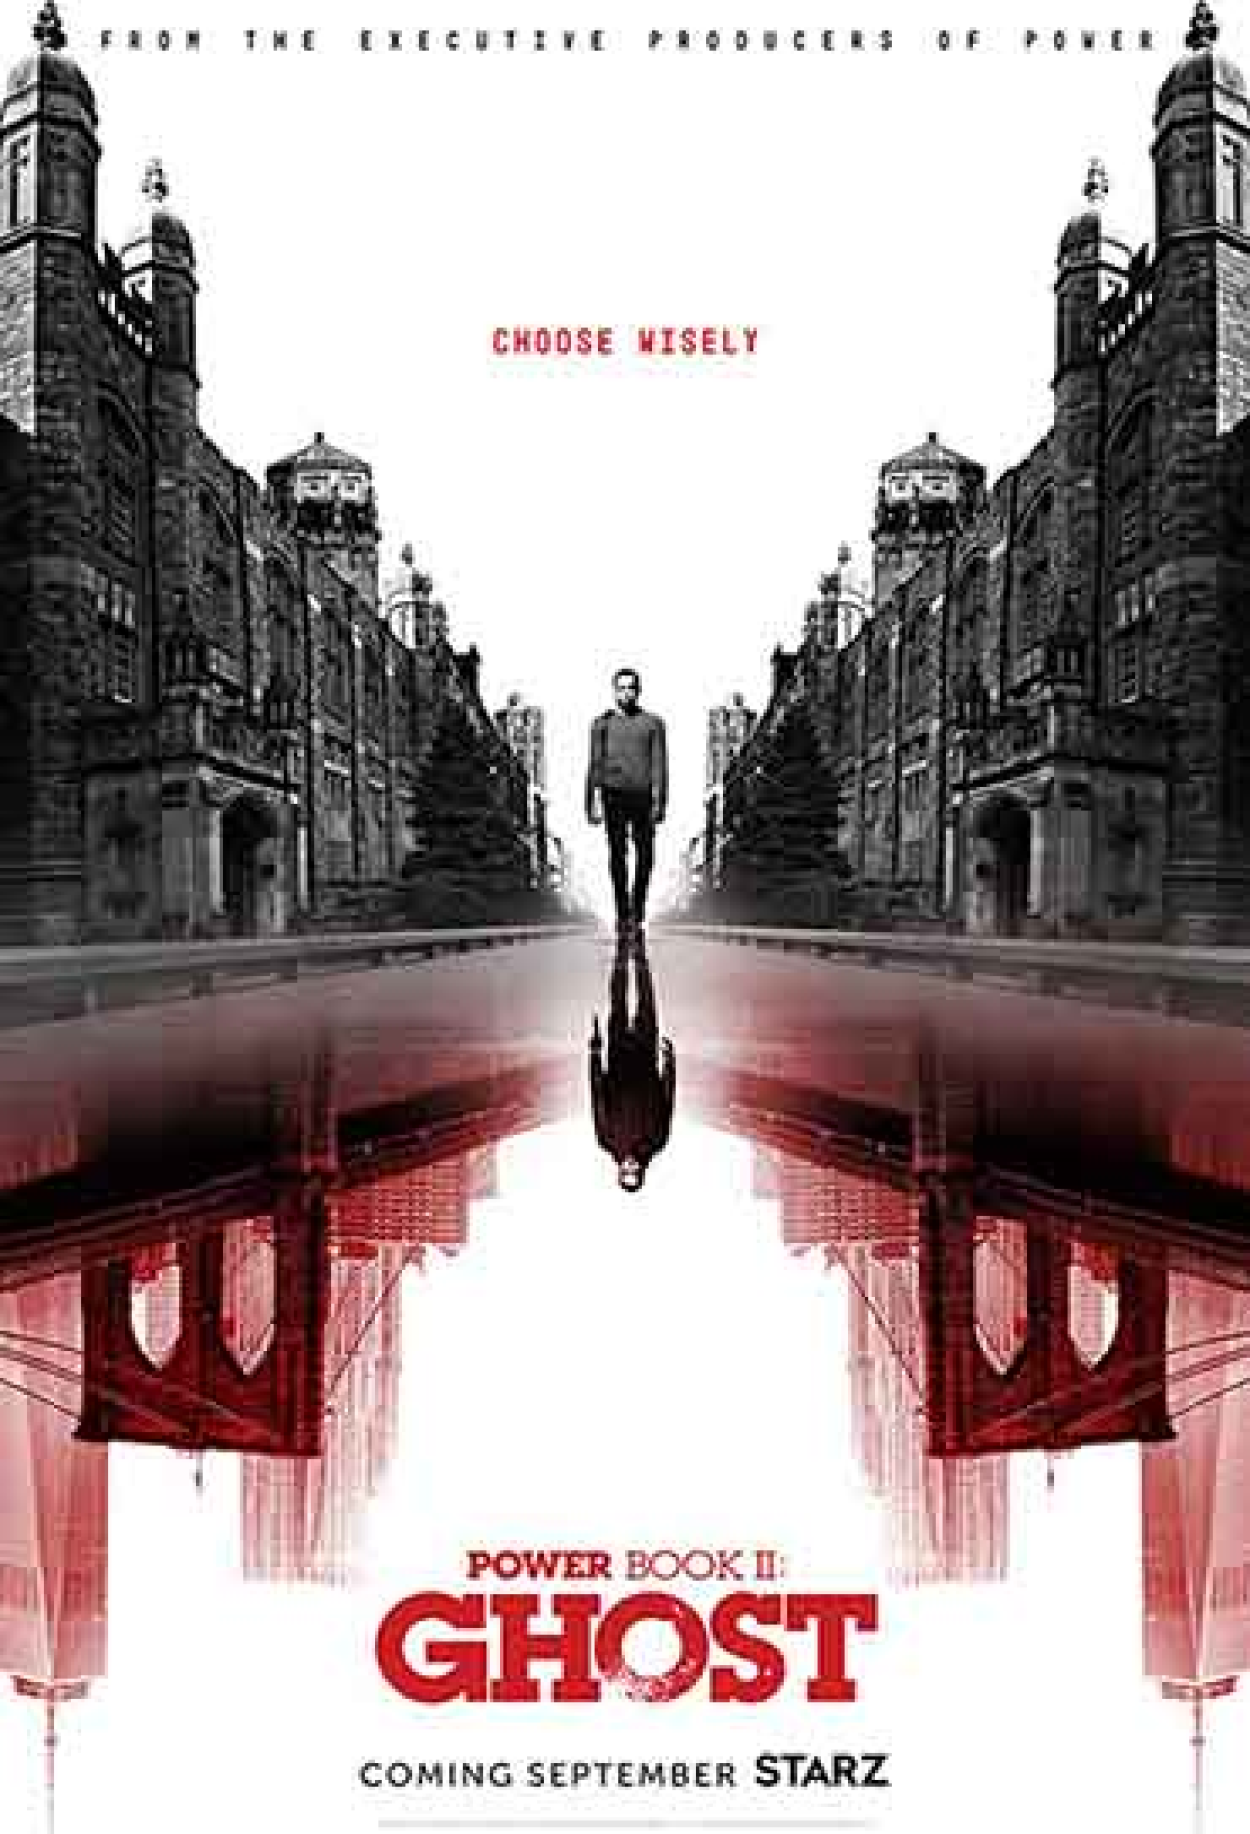 Chosen (Série), Sinopse, Trailers e Curiosidades - Cinema10